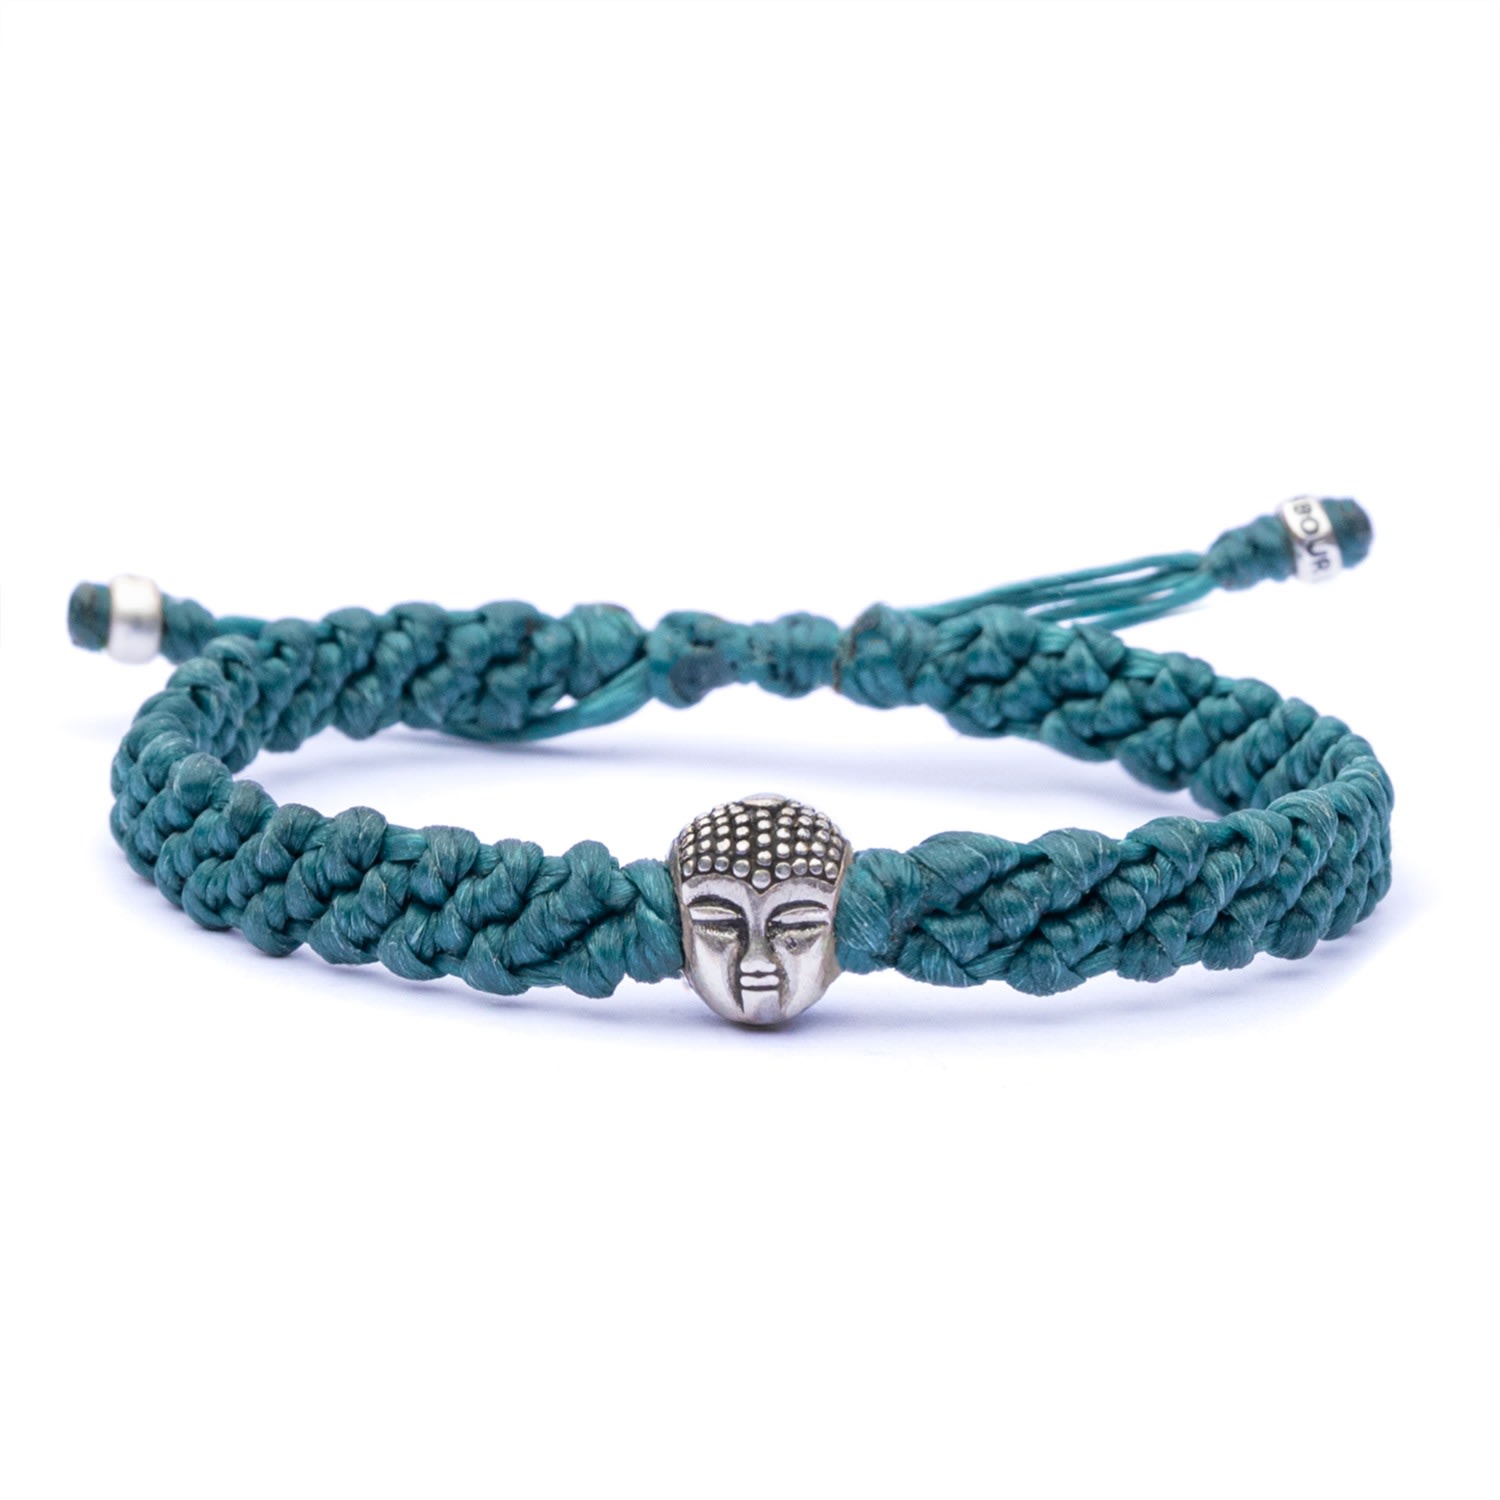 Buddha Bracelet For Men - Handmade Of Green Rope & Sterling Silver - Green Harbour UK Bracelets